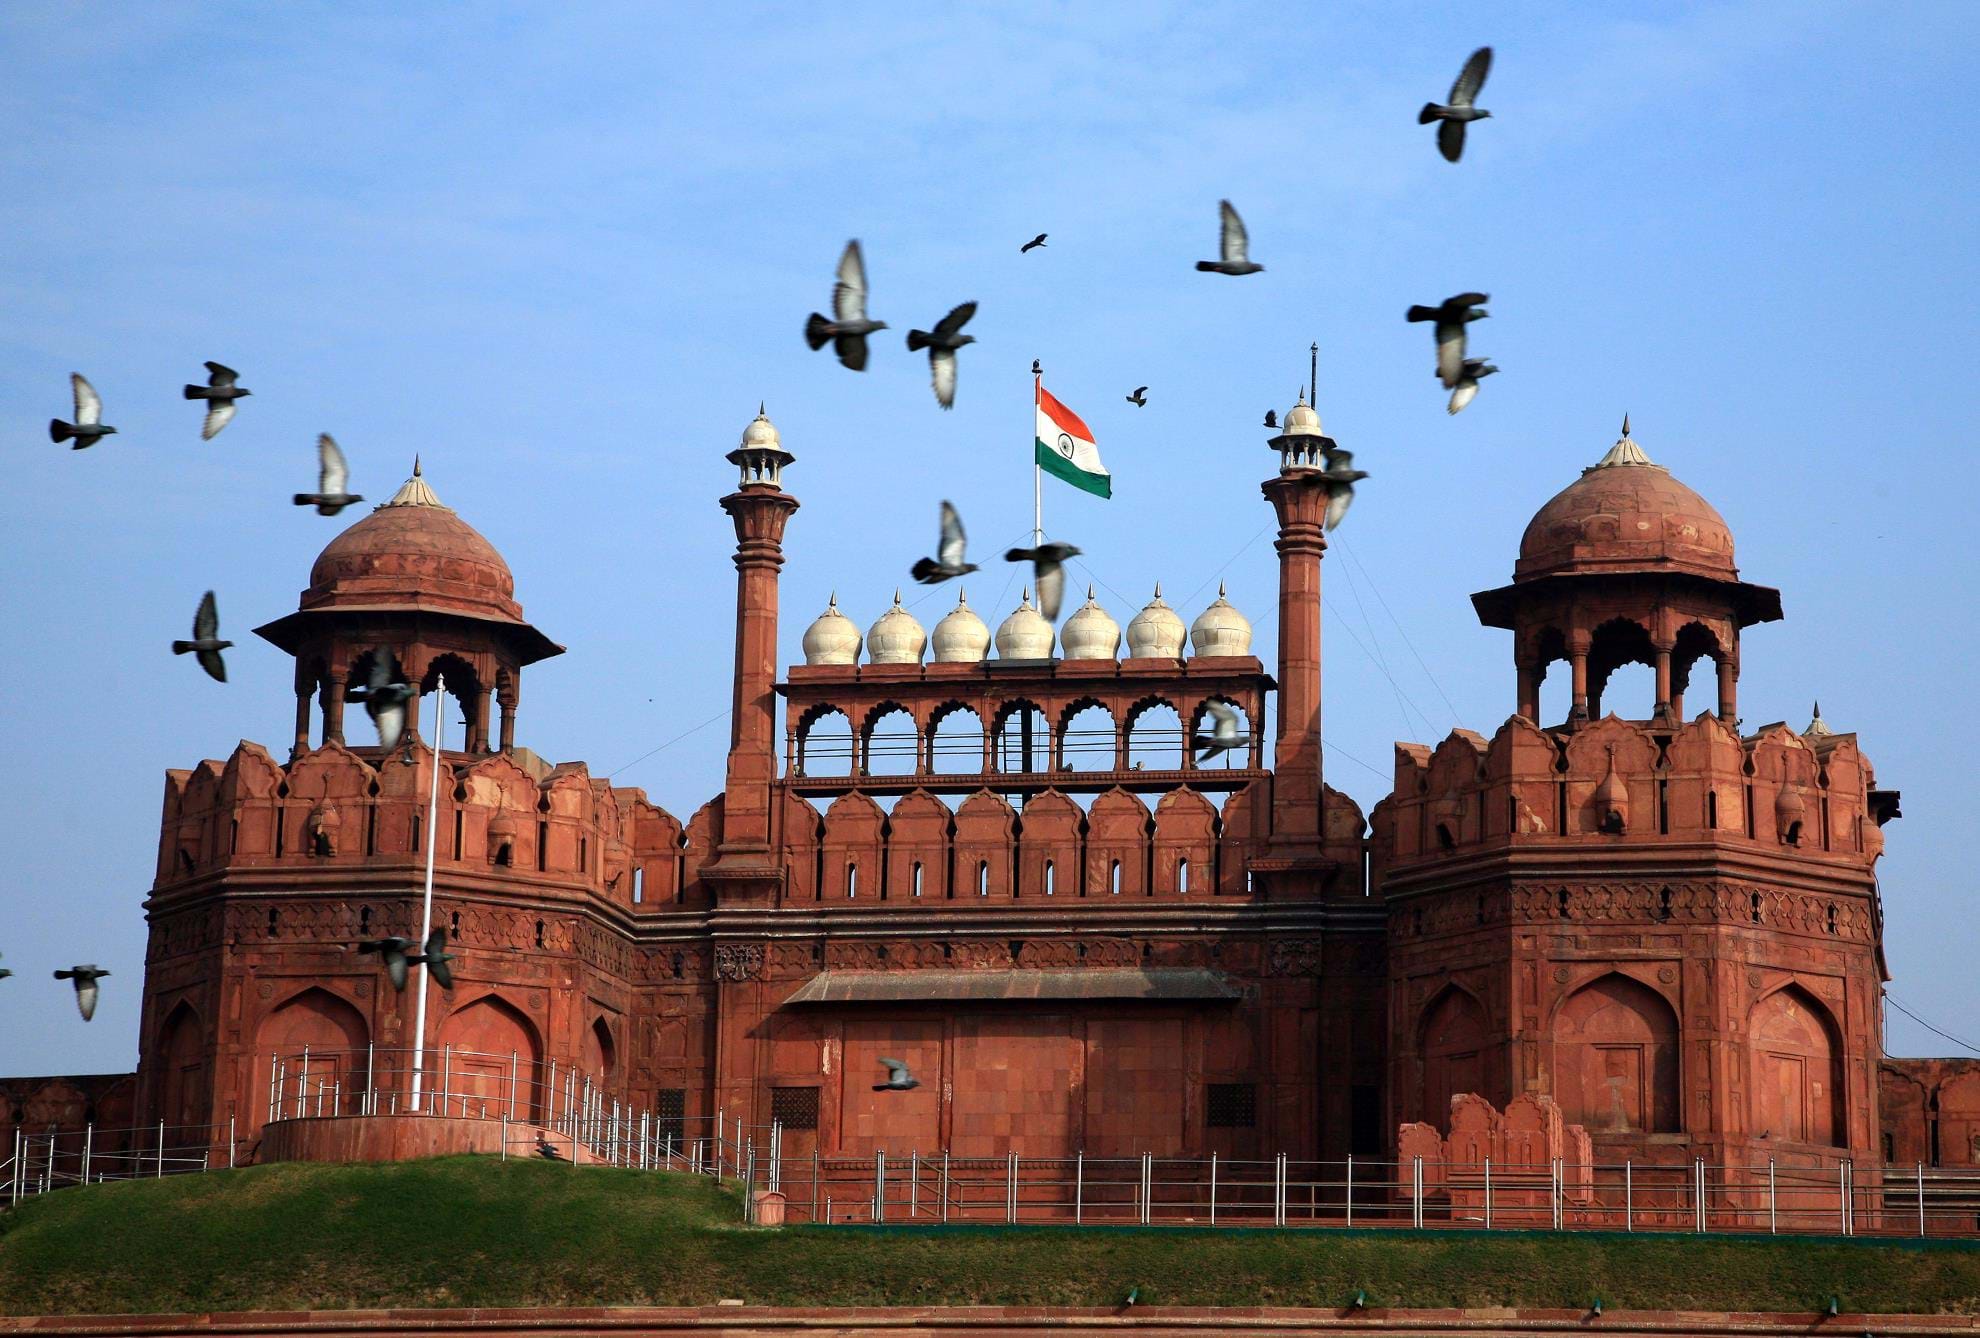 en kreditor Fader fage Godkendelse About The Red Fort Complex in Delhi, India | TransIndus